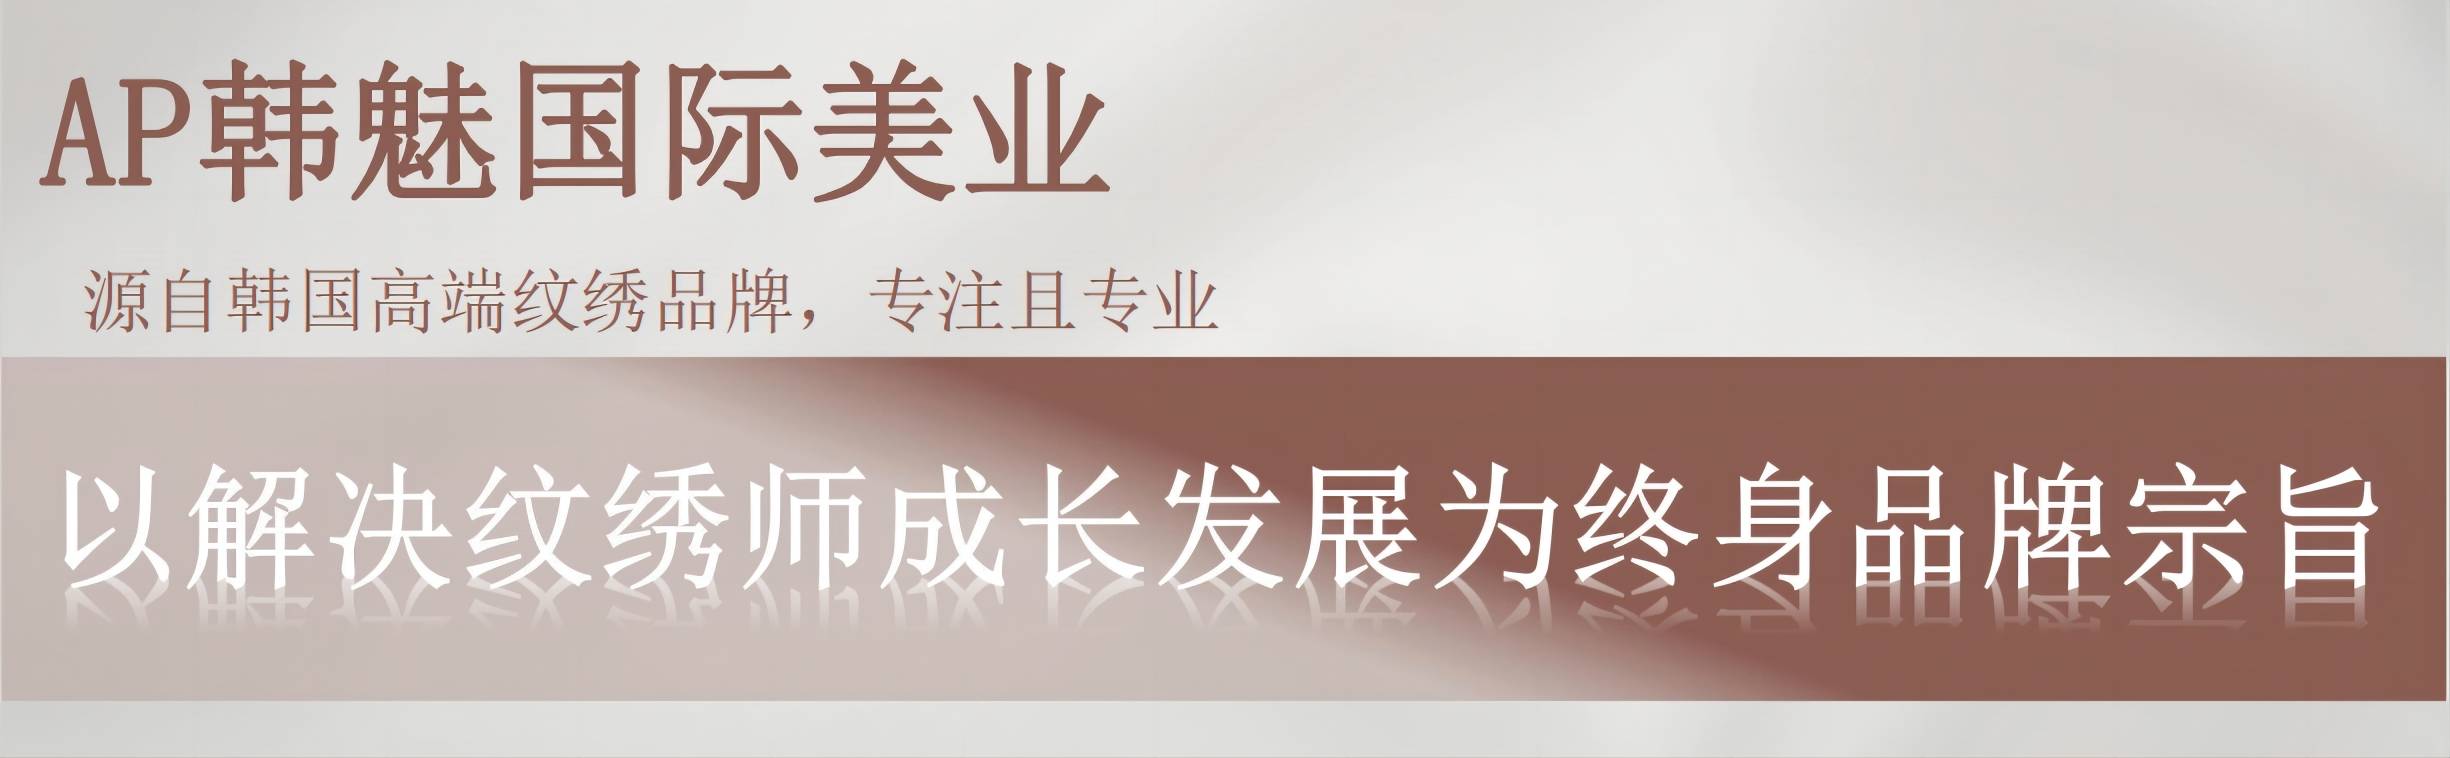 广州八大正规的半永久培训机构一览